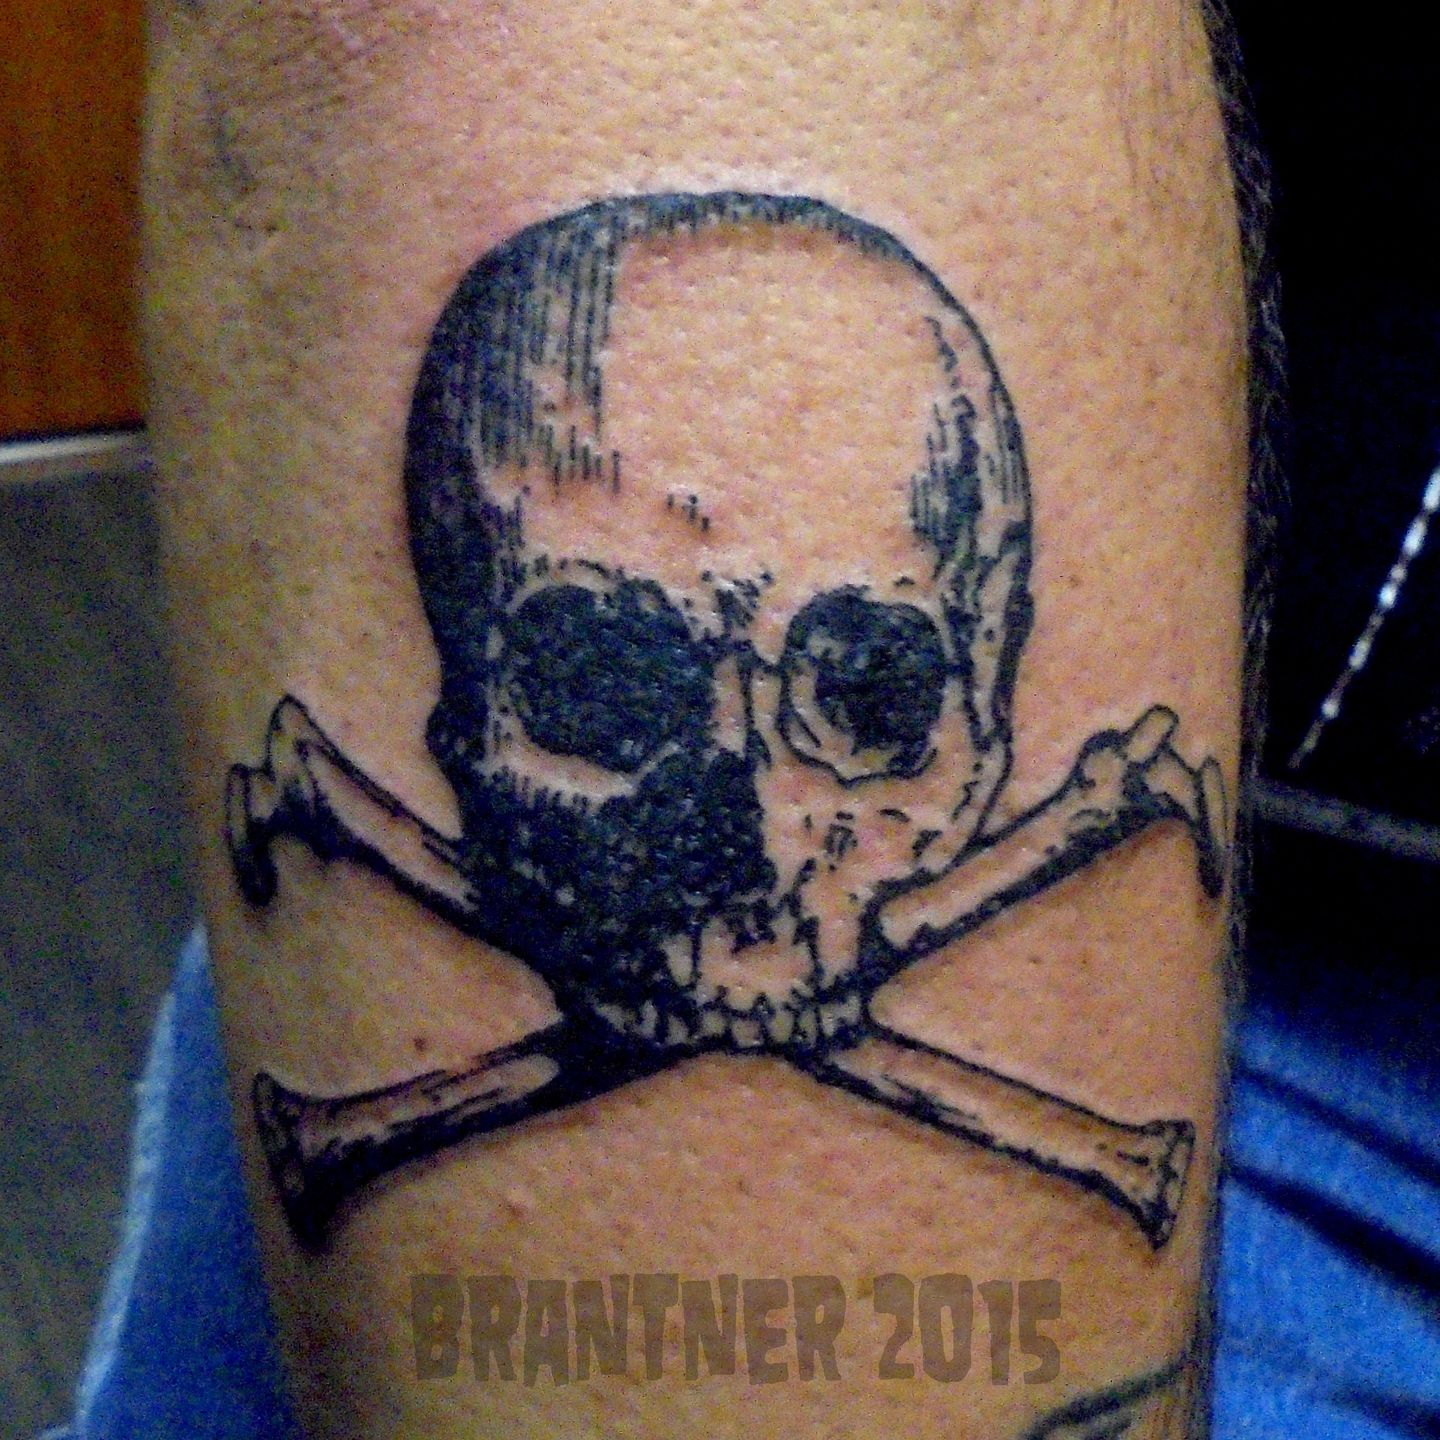 Buy Skull and Crossbones Temporary Tattoo Precut Online in India  Etsy